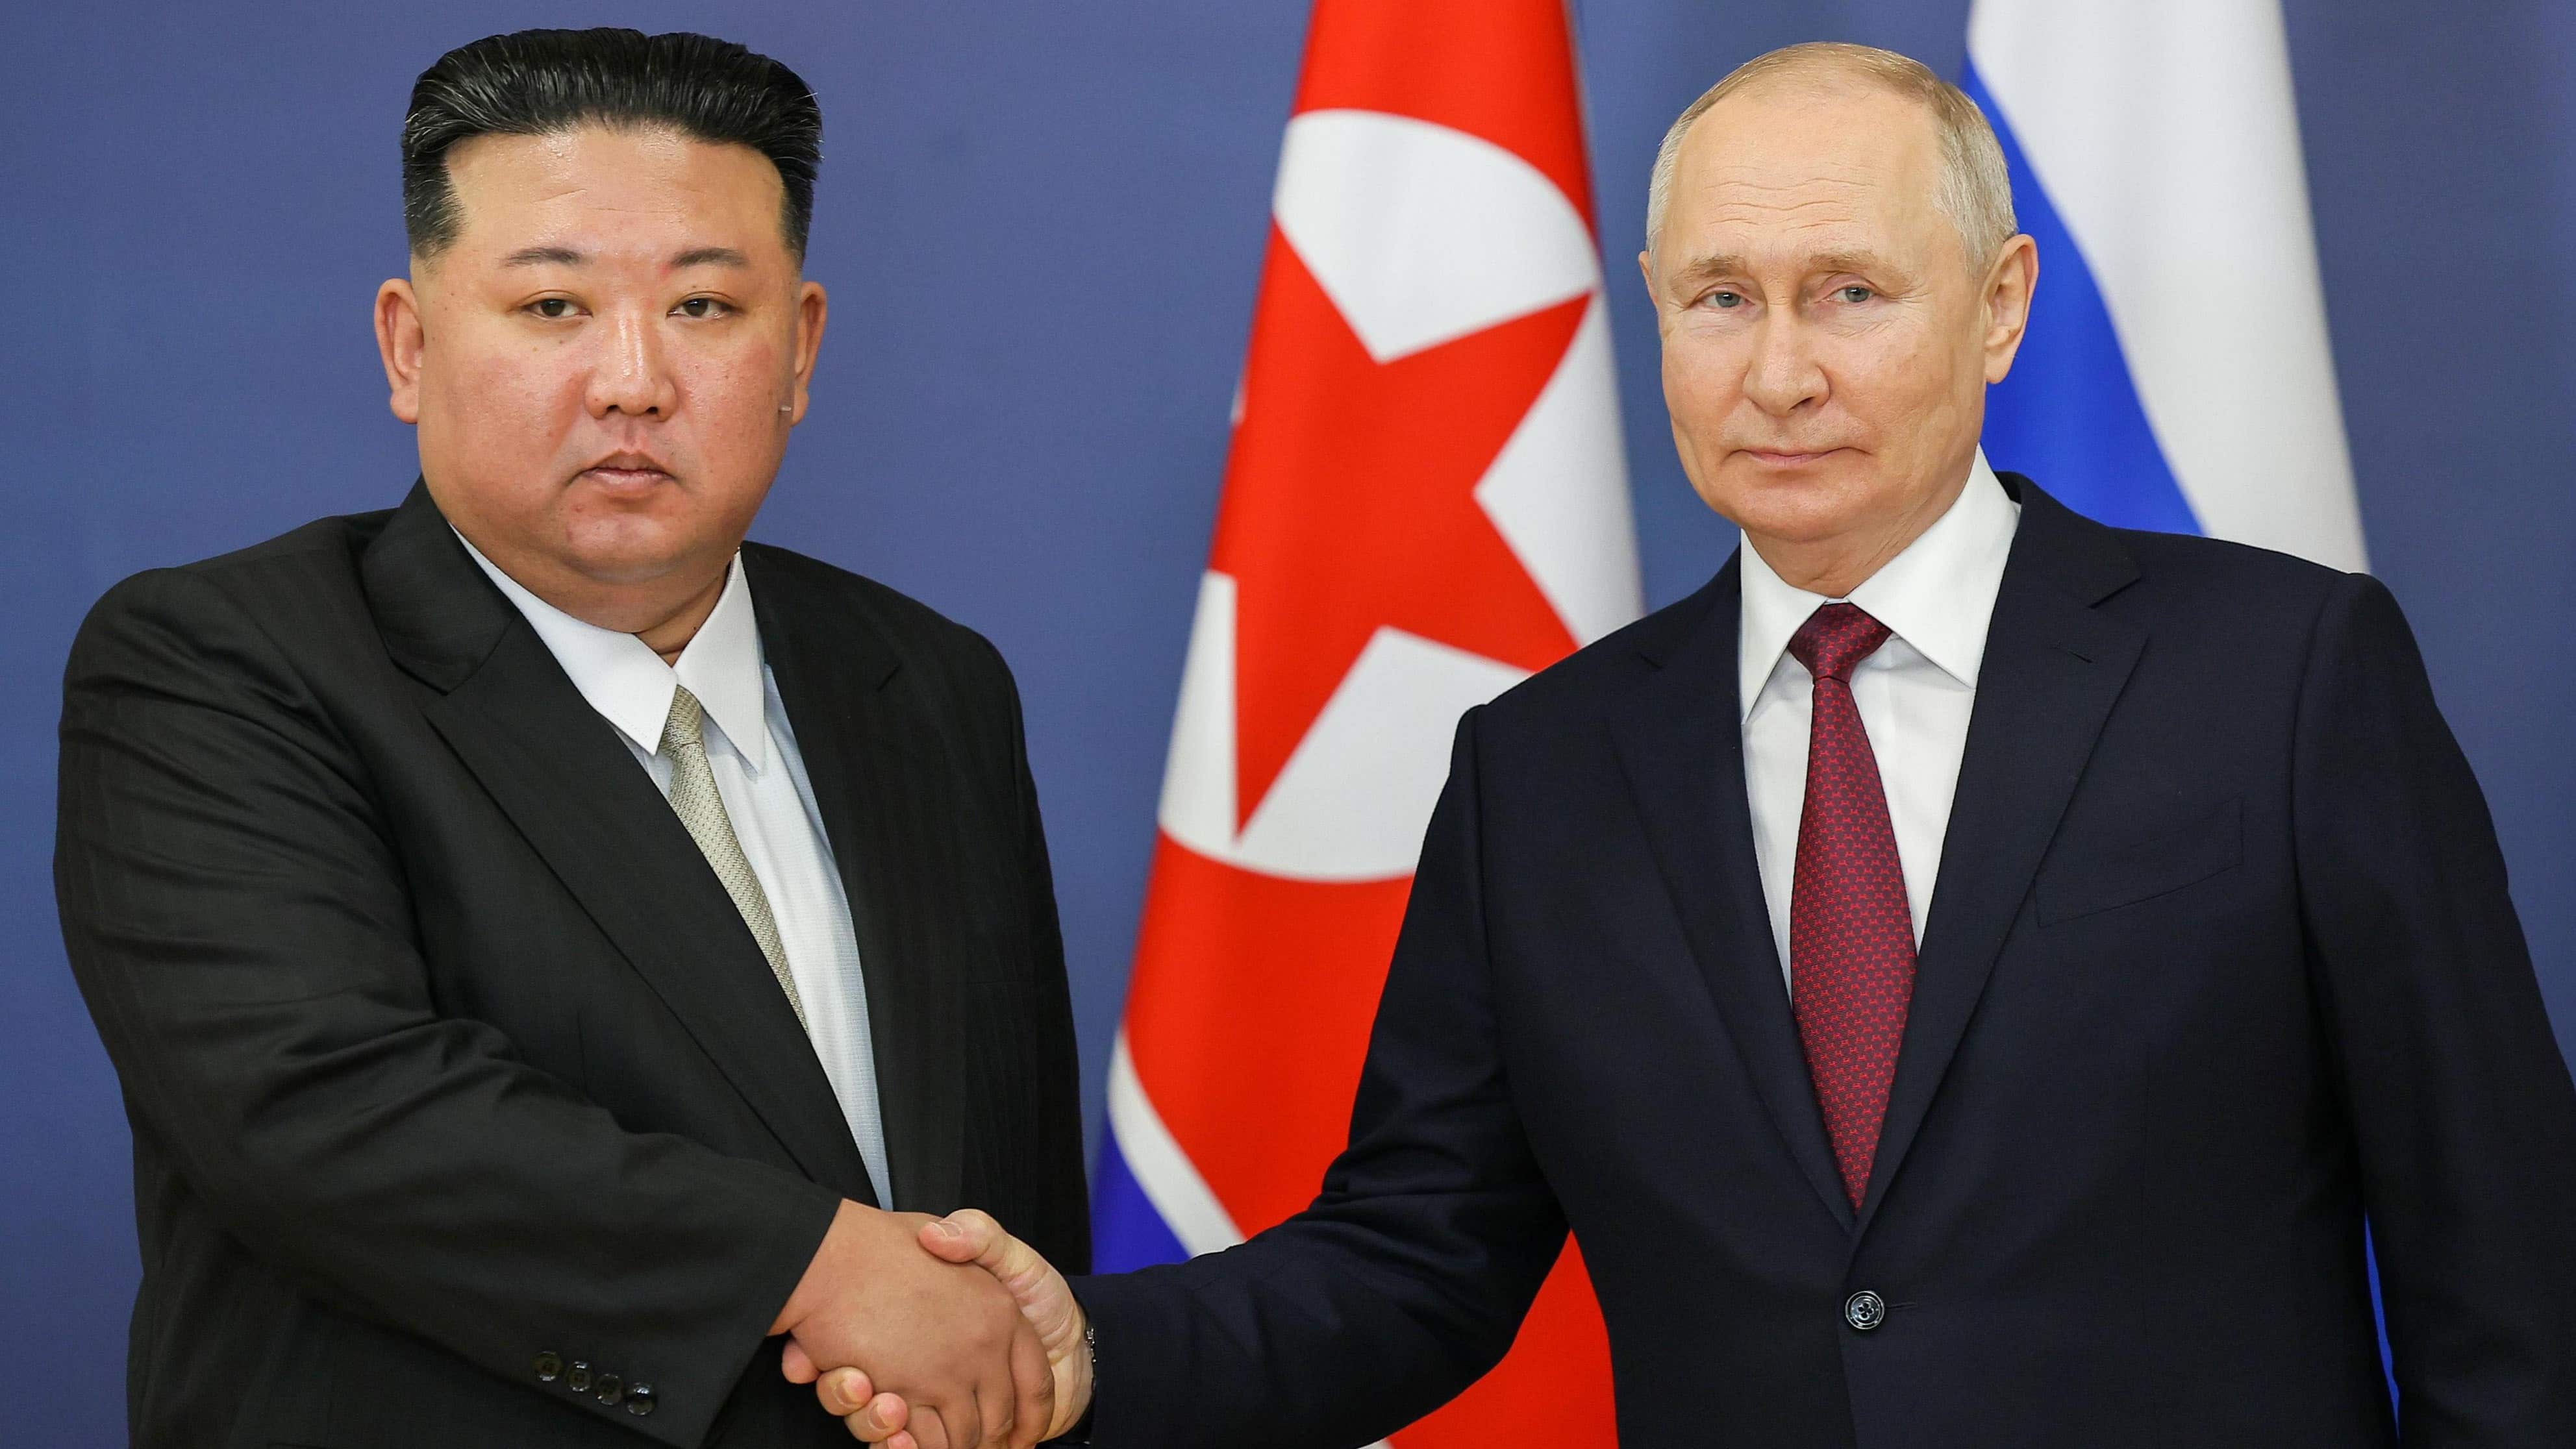 ロシアにとって北朝鮮との協力には魅力がない ロシア出身の北朝鮮専門家が語るロ朝関係のリアル